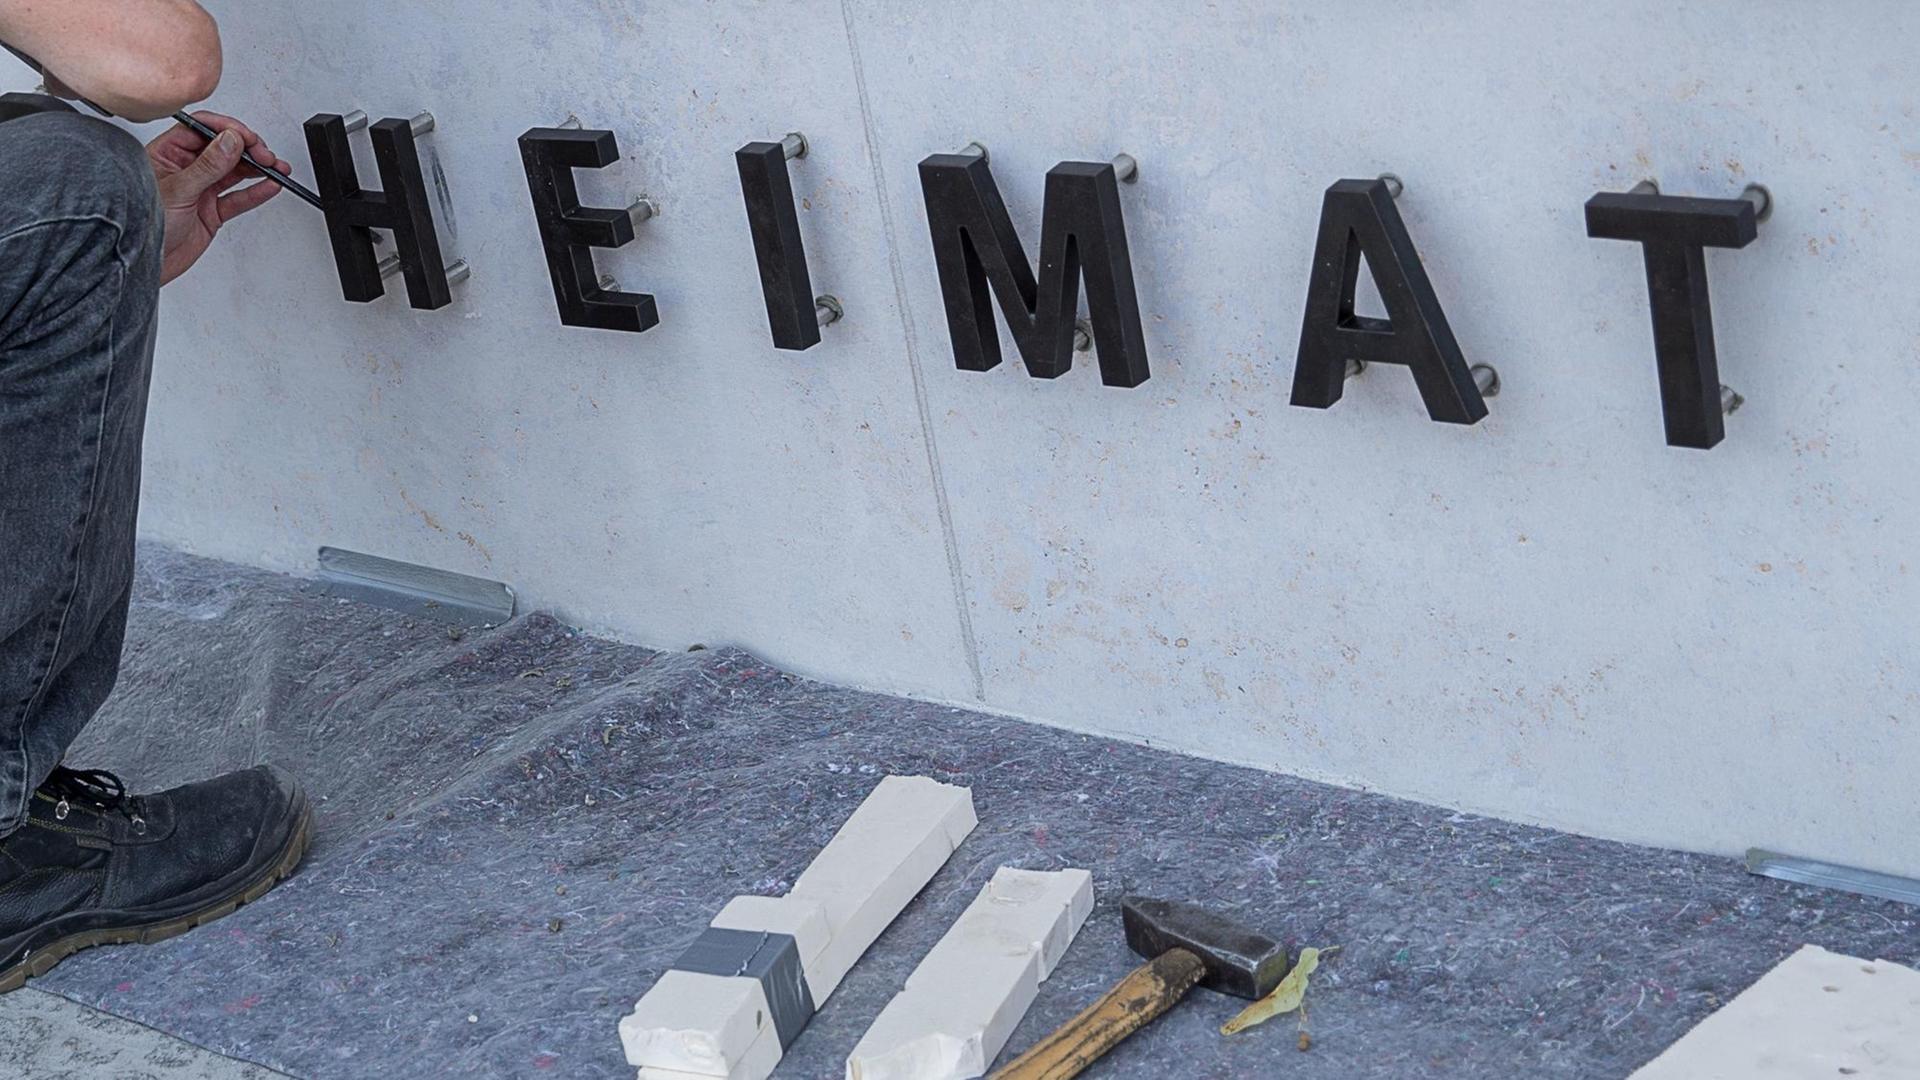 09.08.2018, Berlin: Handwerker befestigen die Buchstaben für das Wort "Heimat" am Eingang zum Dienstgebäude des "Bundesministerium des Innern, für Bau und Heimat"